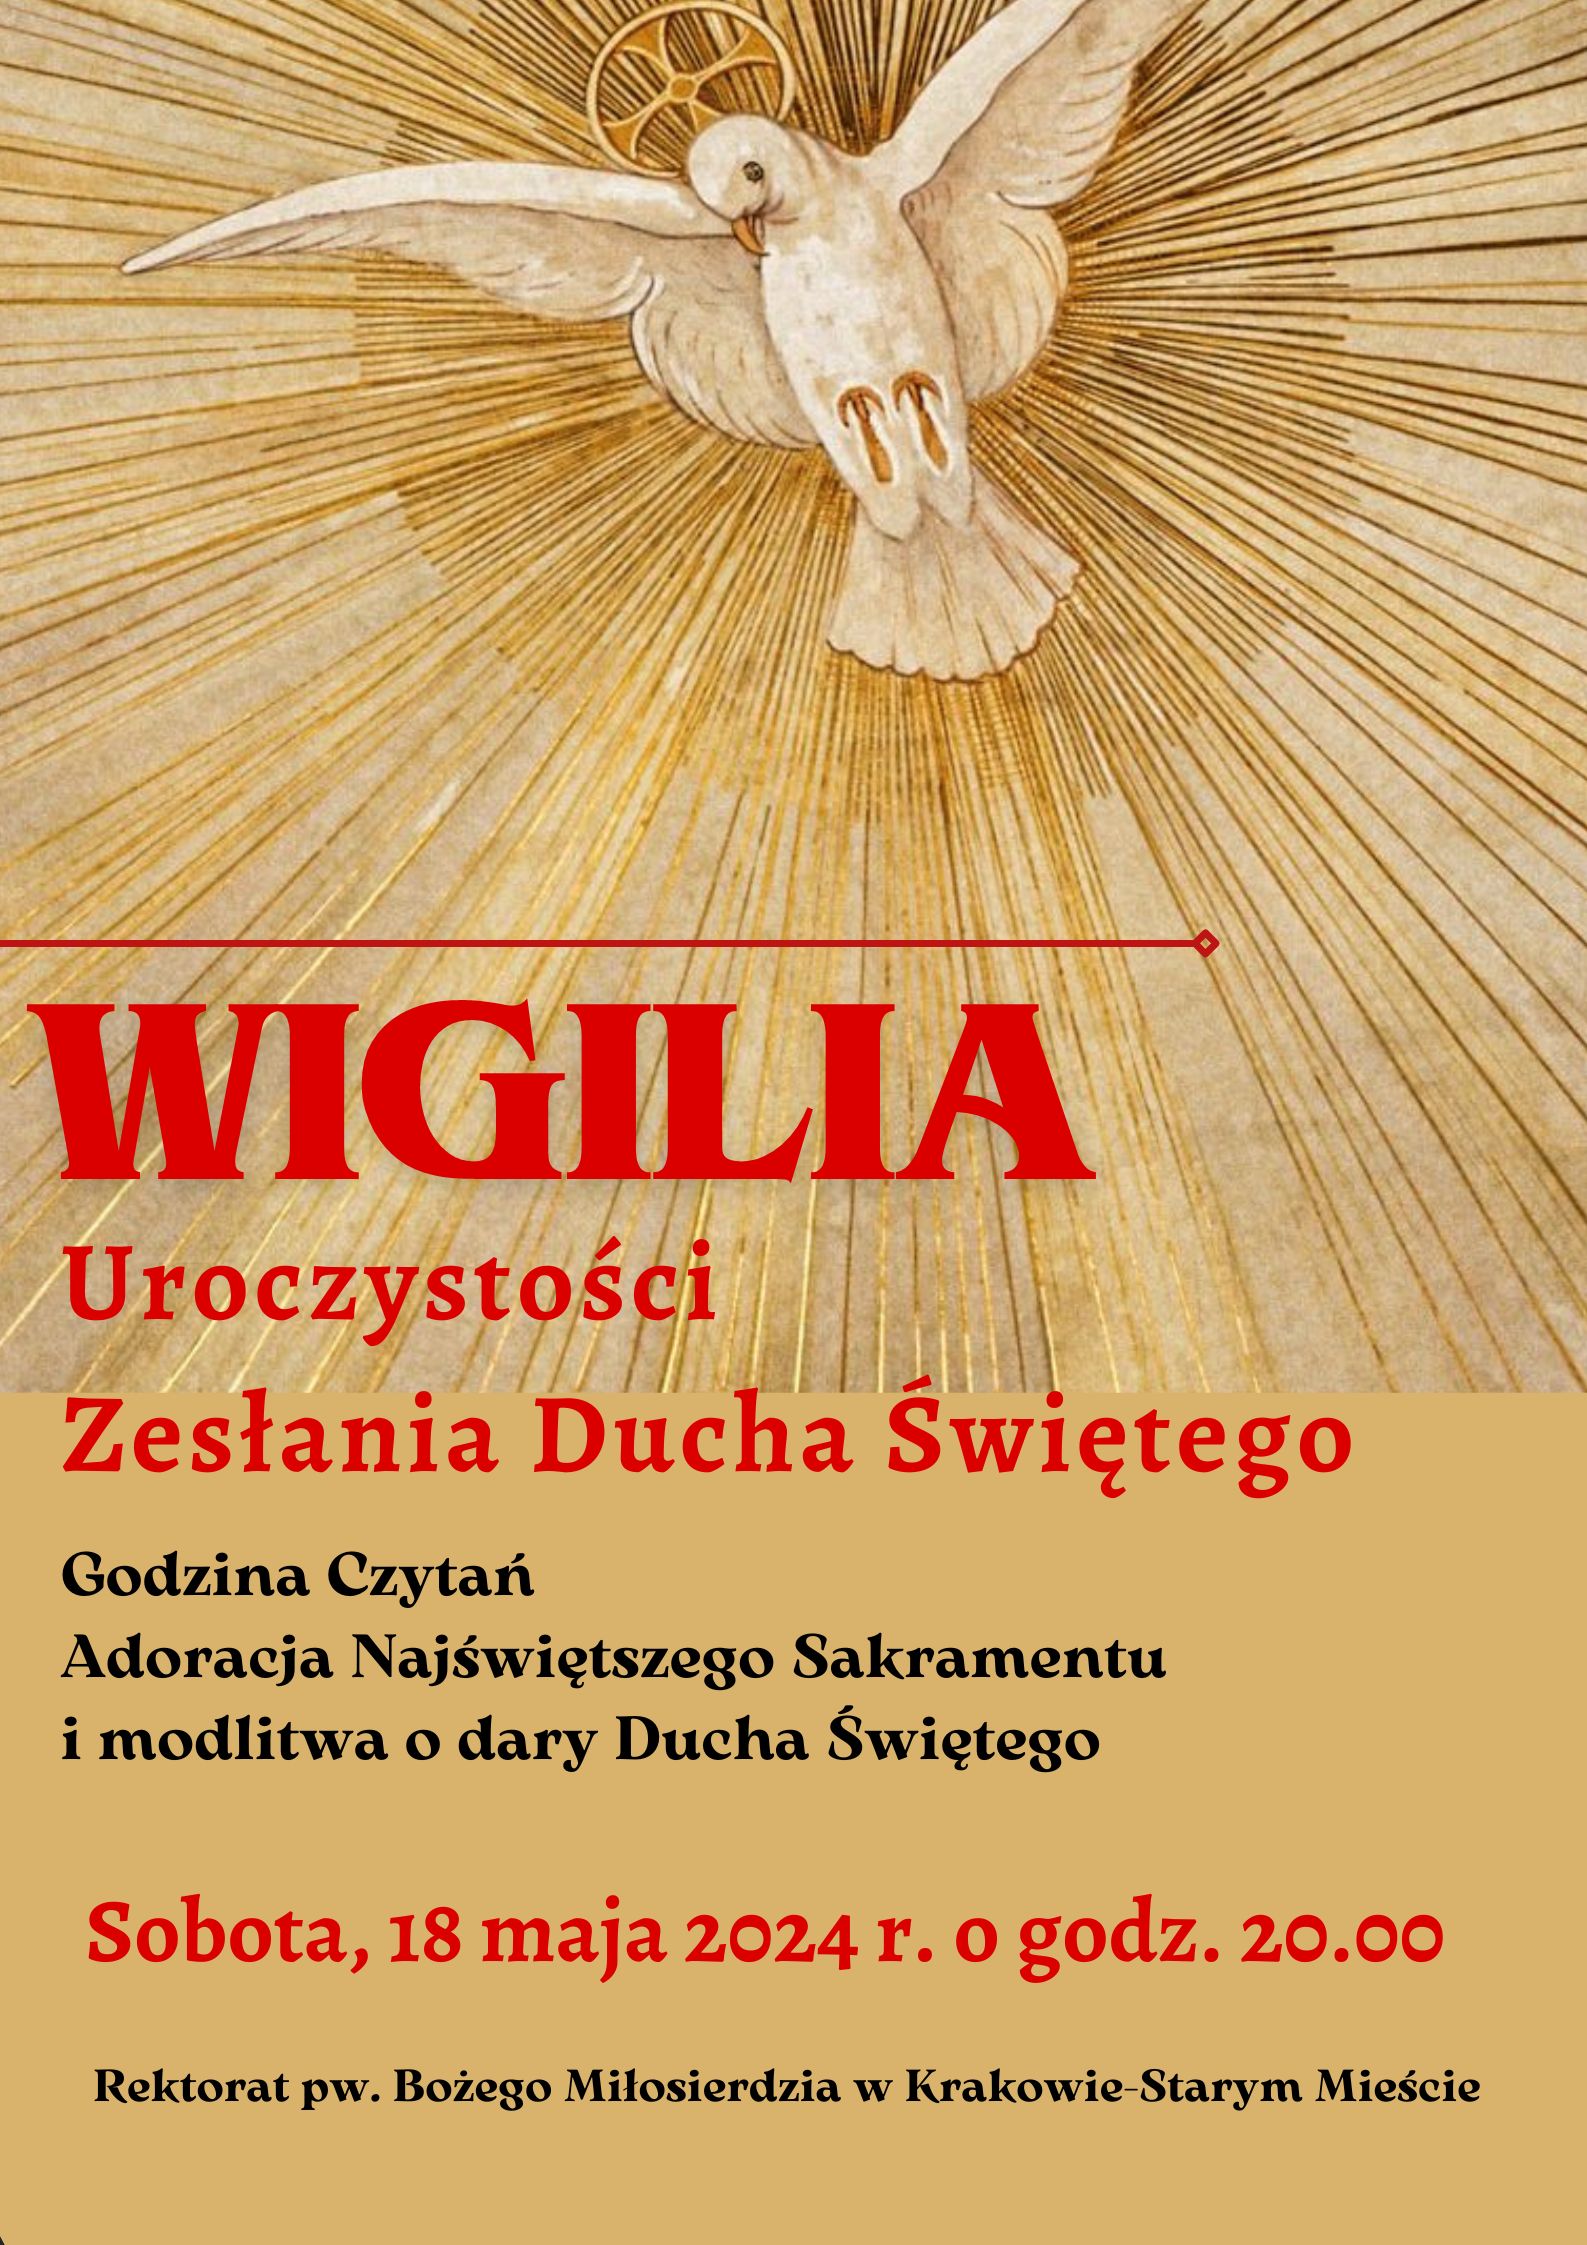 Wigilia Zesłania Ducha Świętego w kościele Bożego Miłosierdzia w Krakowie-Starym Mieście